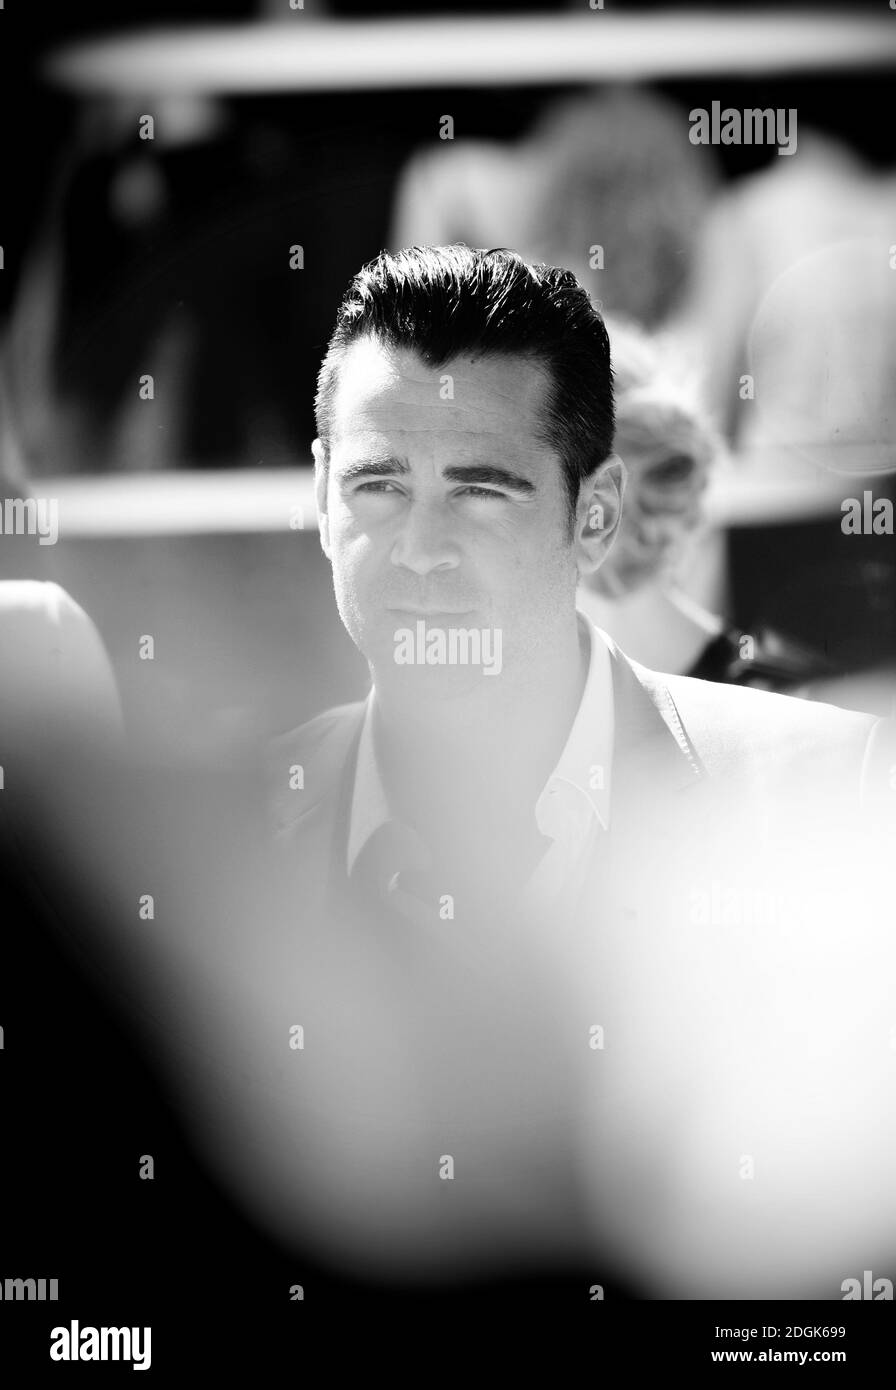 Colin Farrell partecipa alla fotocellula dell'aragosta che si svolge durante il 68° Festival de Cannes che si tiene al Palais de Festival di Cannes, Francia. (Credito obbligatorio: Doug Peters/EMPICS Entertainment) Foto Stock